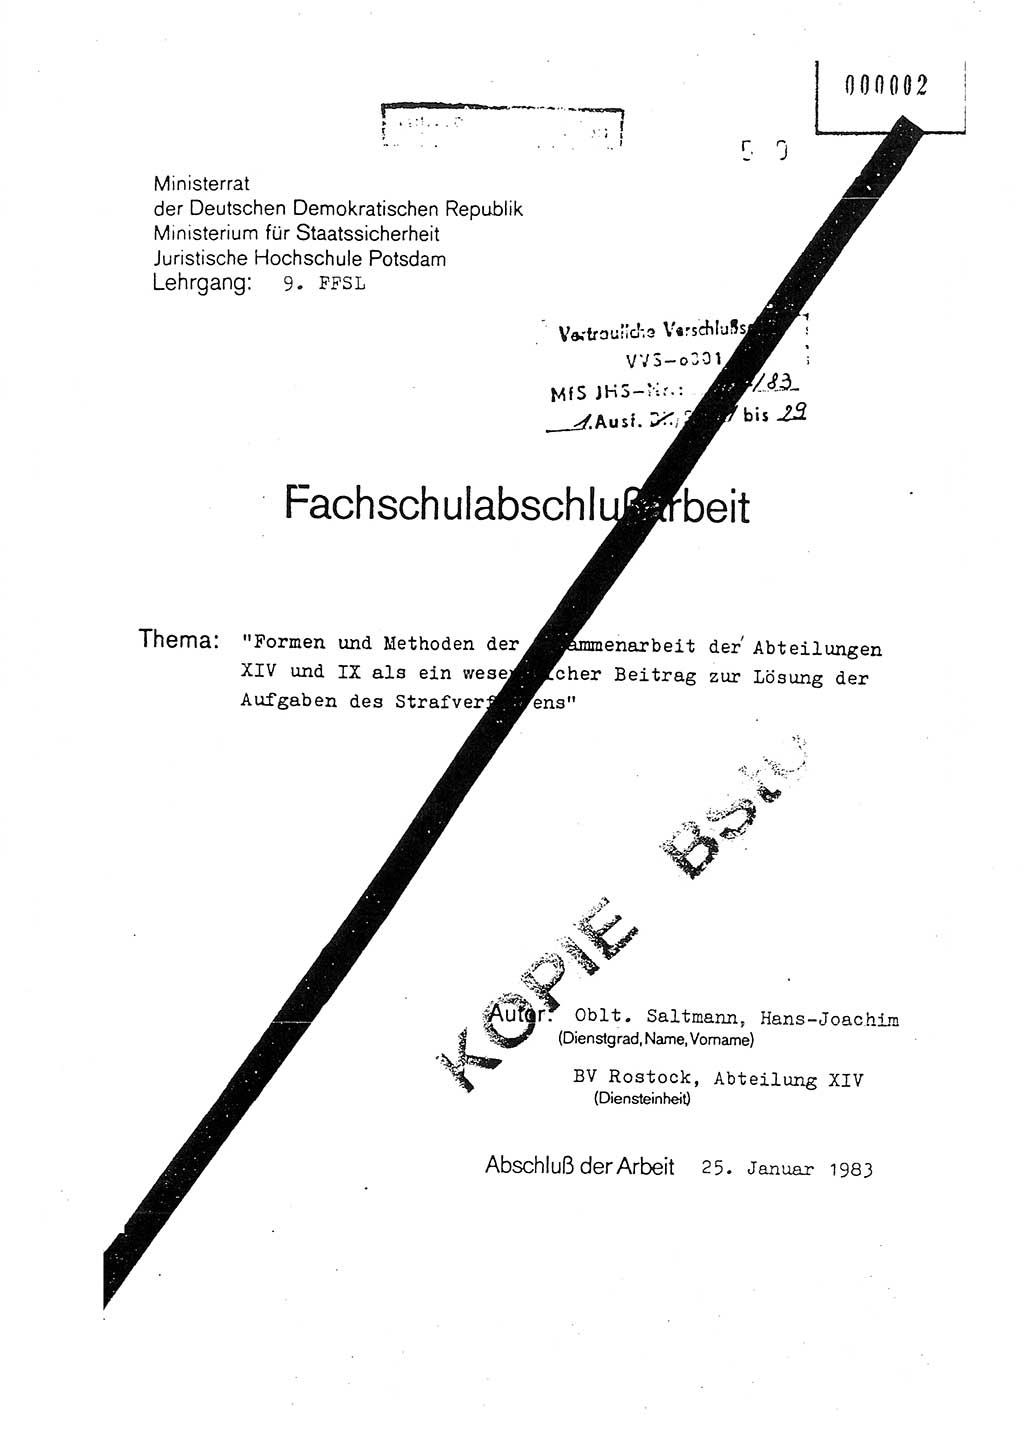 Fachschulabschlußarbeit Oberleutnant Hans-Joachim Saltmann (BV Rostock Abt. ⅩⅣ), Ministerium für Staatssicherheit (MfS) [Deutsche Demokratische Republik (DDR)], Juristische Hochschule (JHS), Vertrauliche Verschlußsache (VVS) o001-607/83, Potsdam 1983, Seite 1 (FS-Abschl.-Arb. MfS DDR JHS VVS o001-607/83 1983, S. 1)